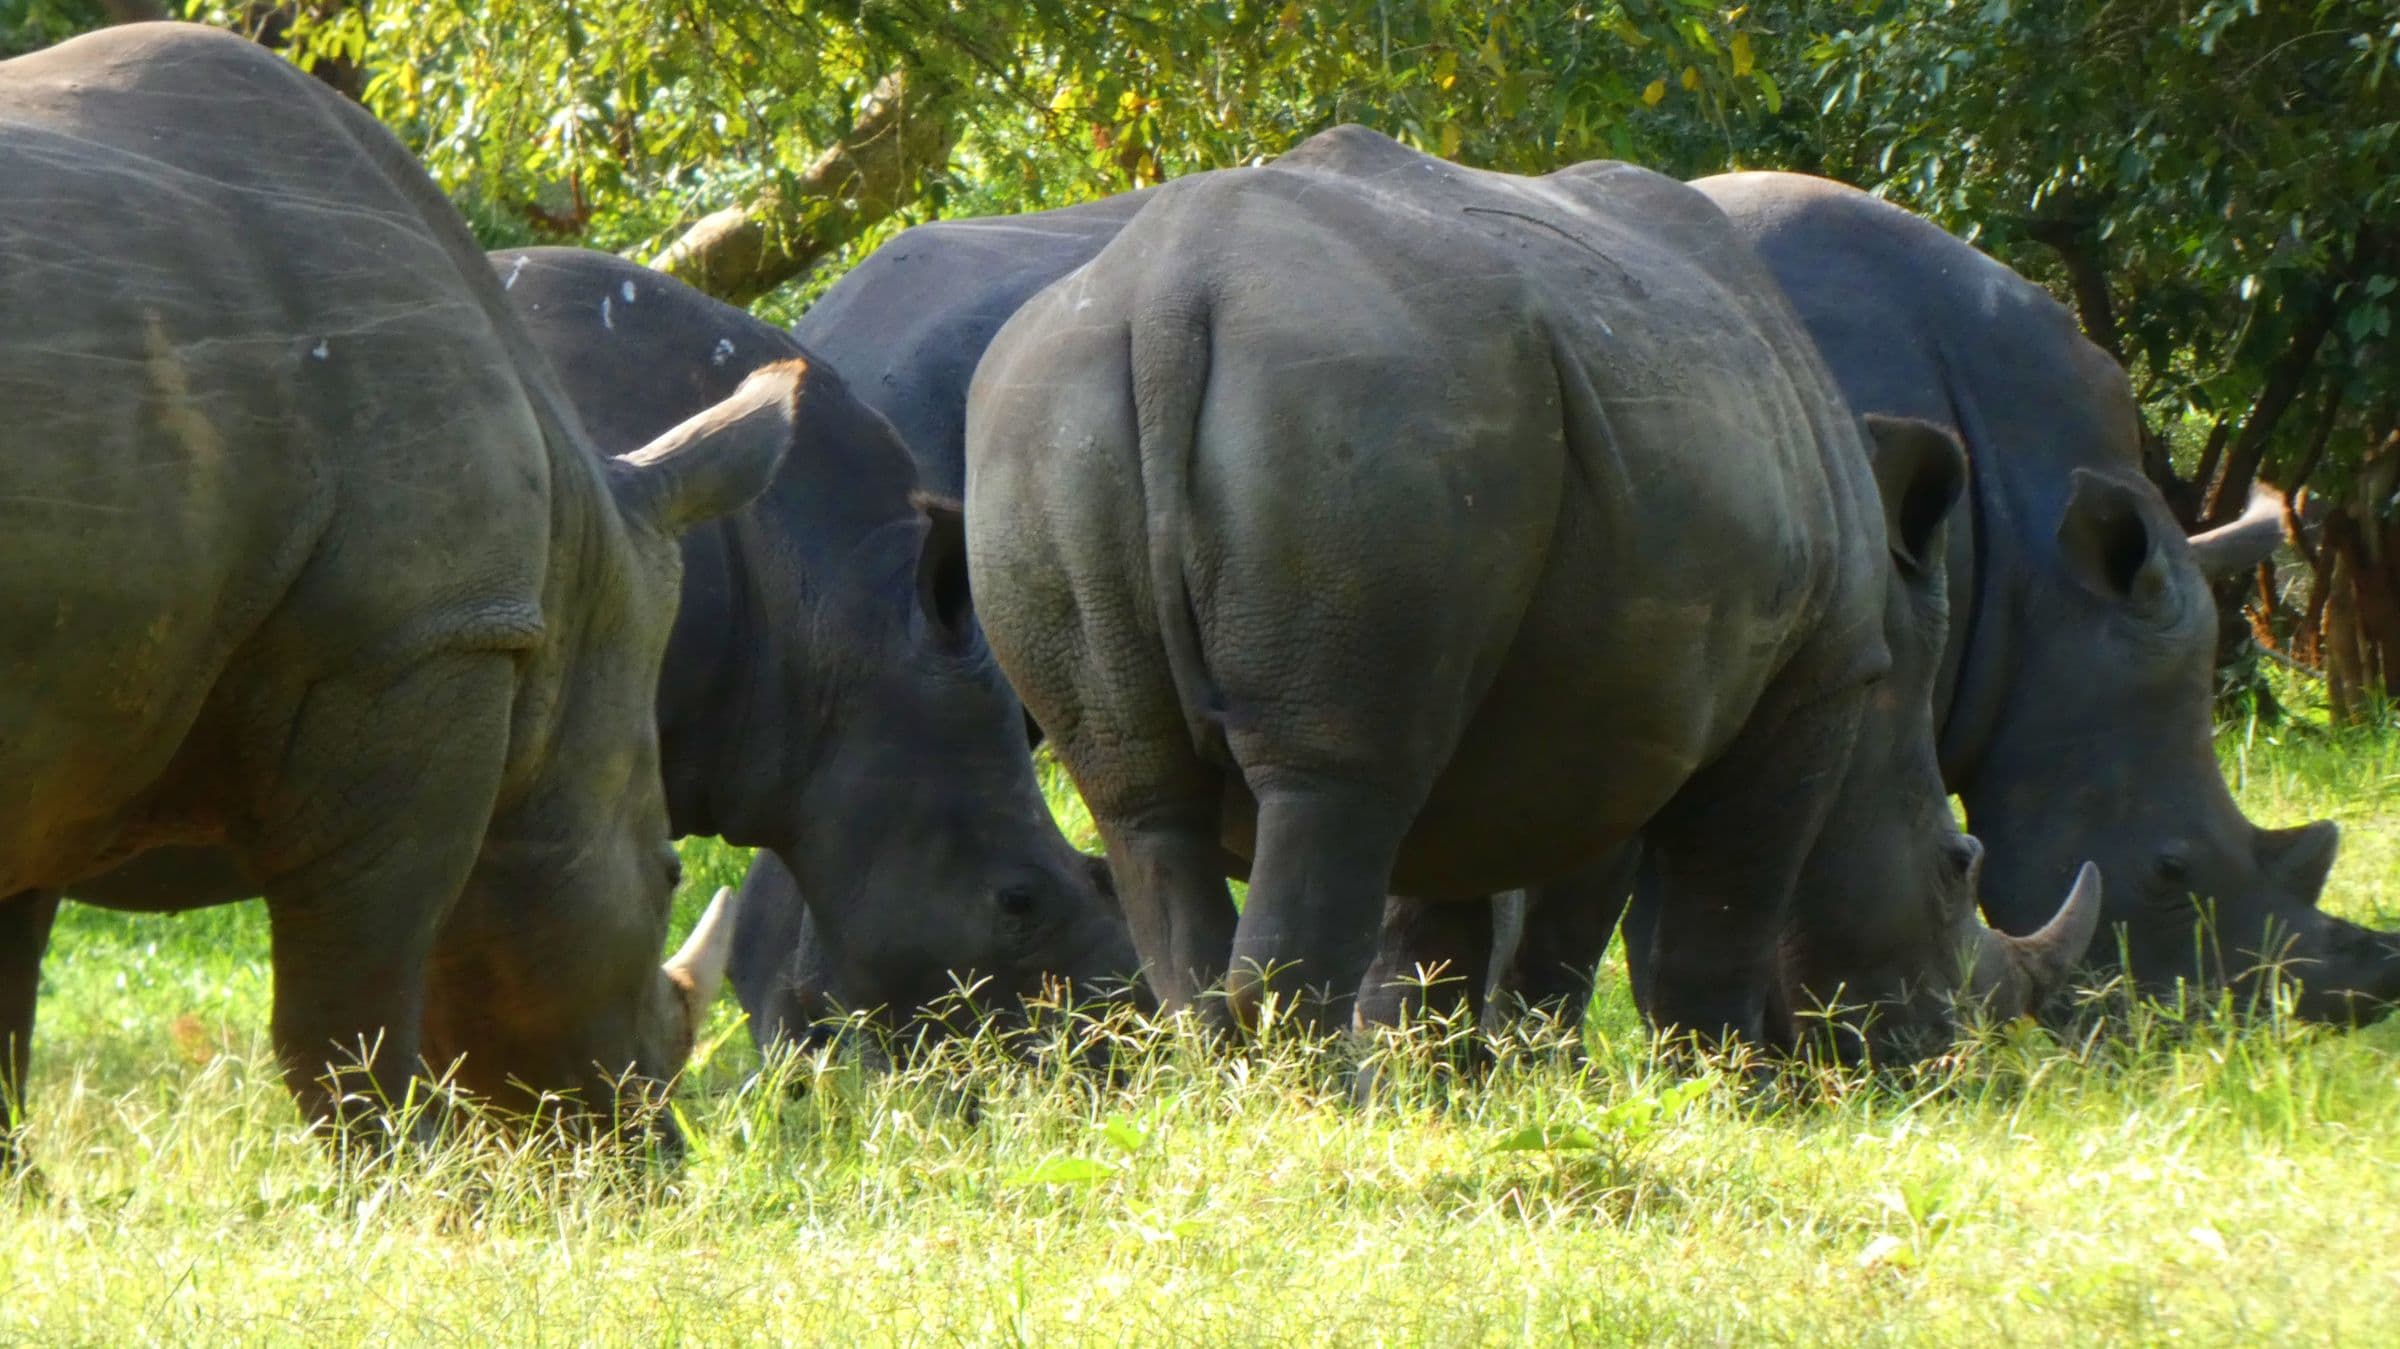 Día 16: Rinocerontes en Ziwa Rhino Sanctuary y vuelta a Entebbe